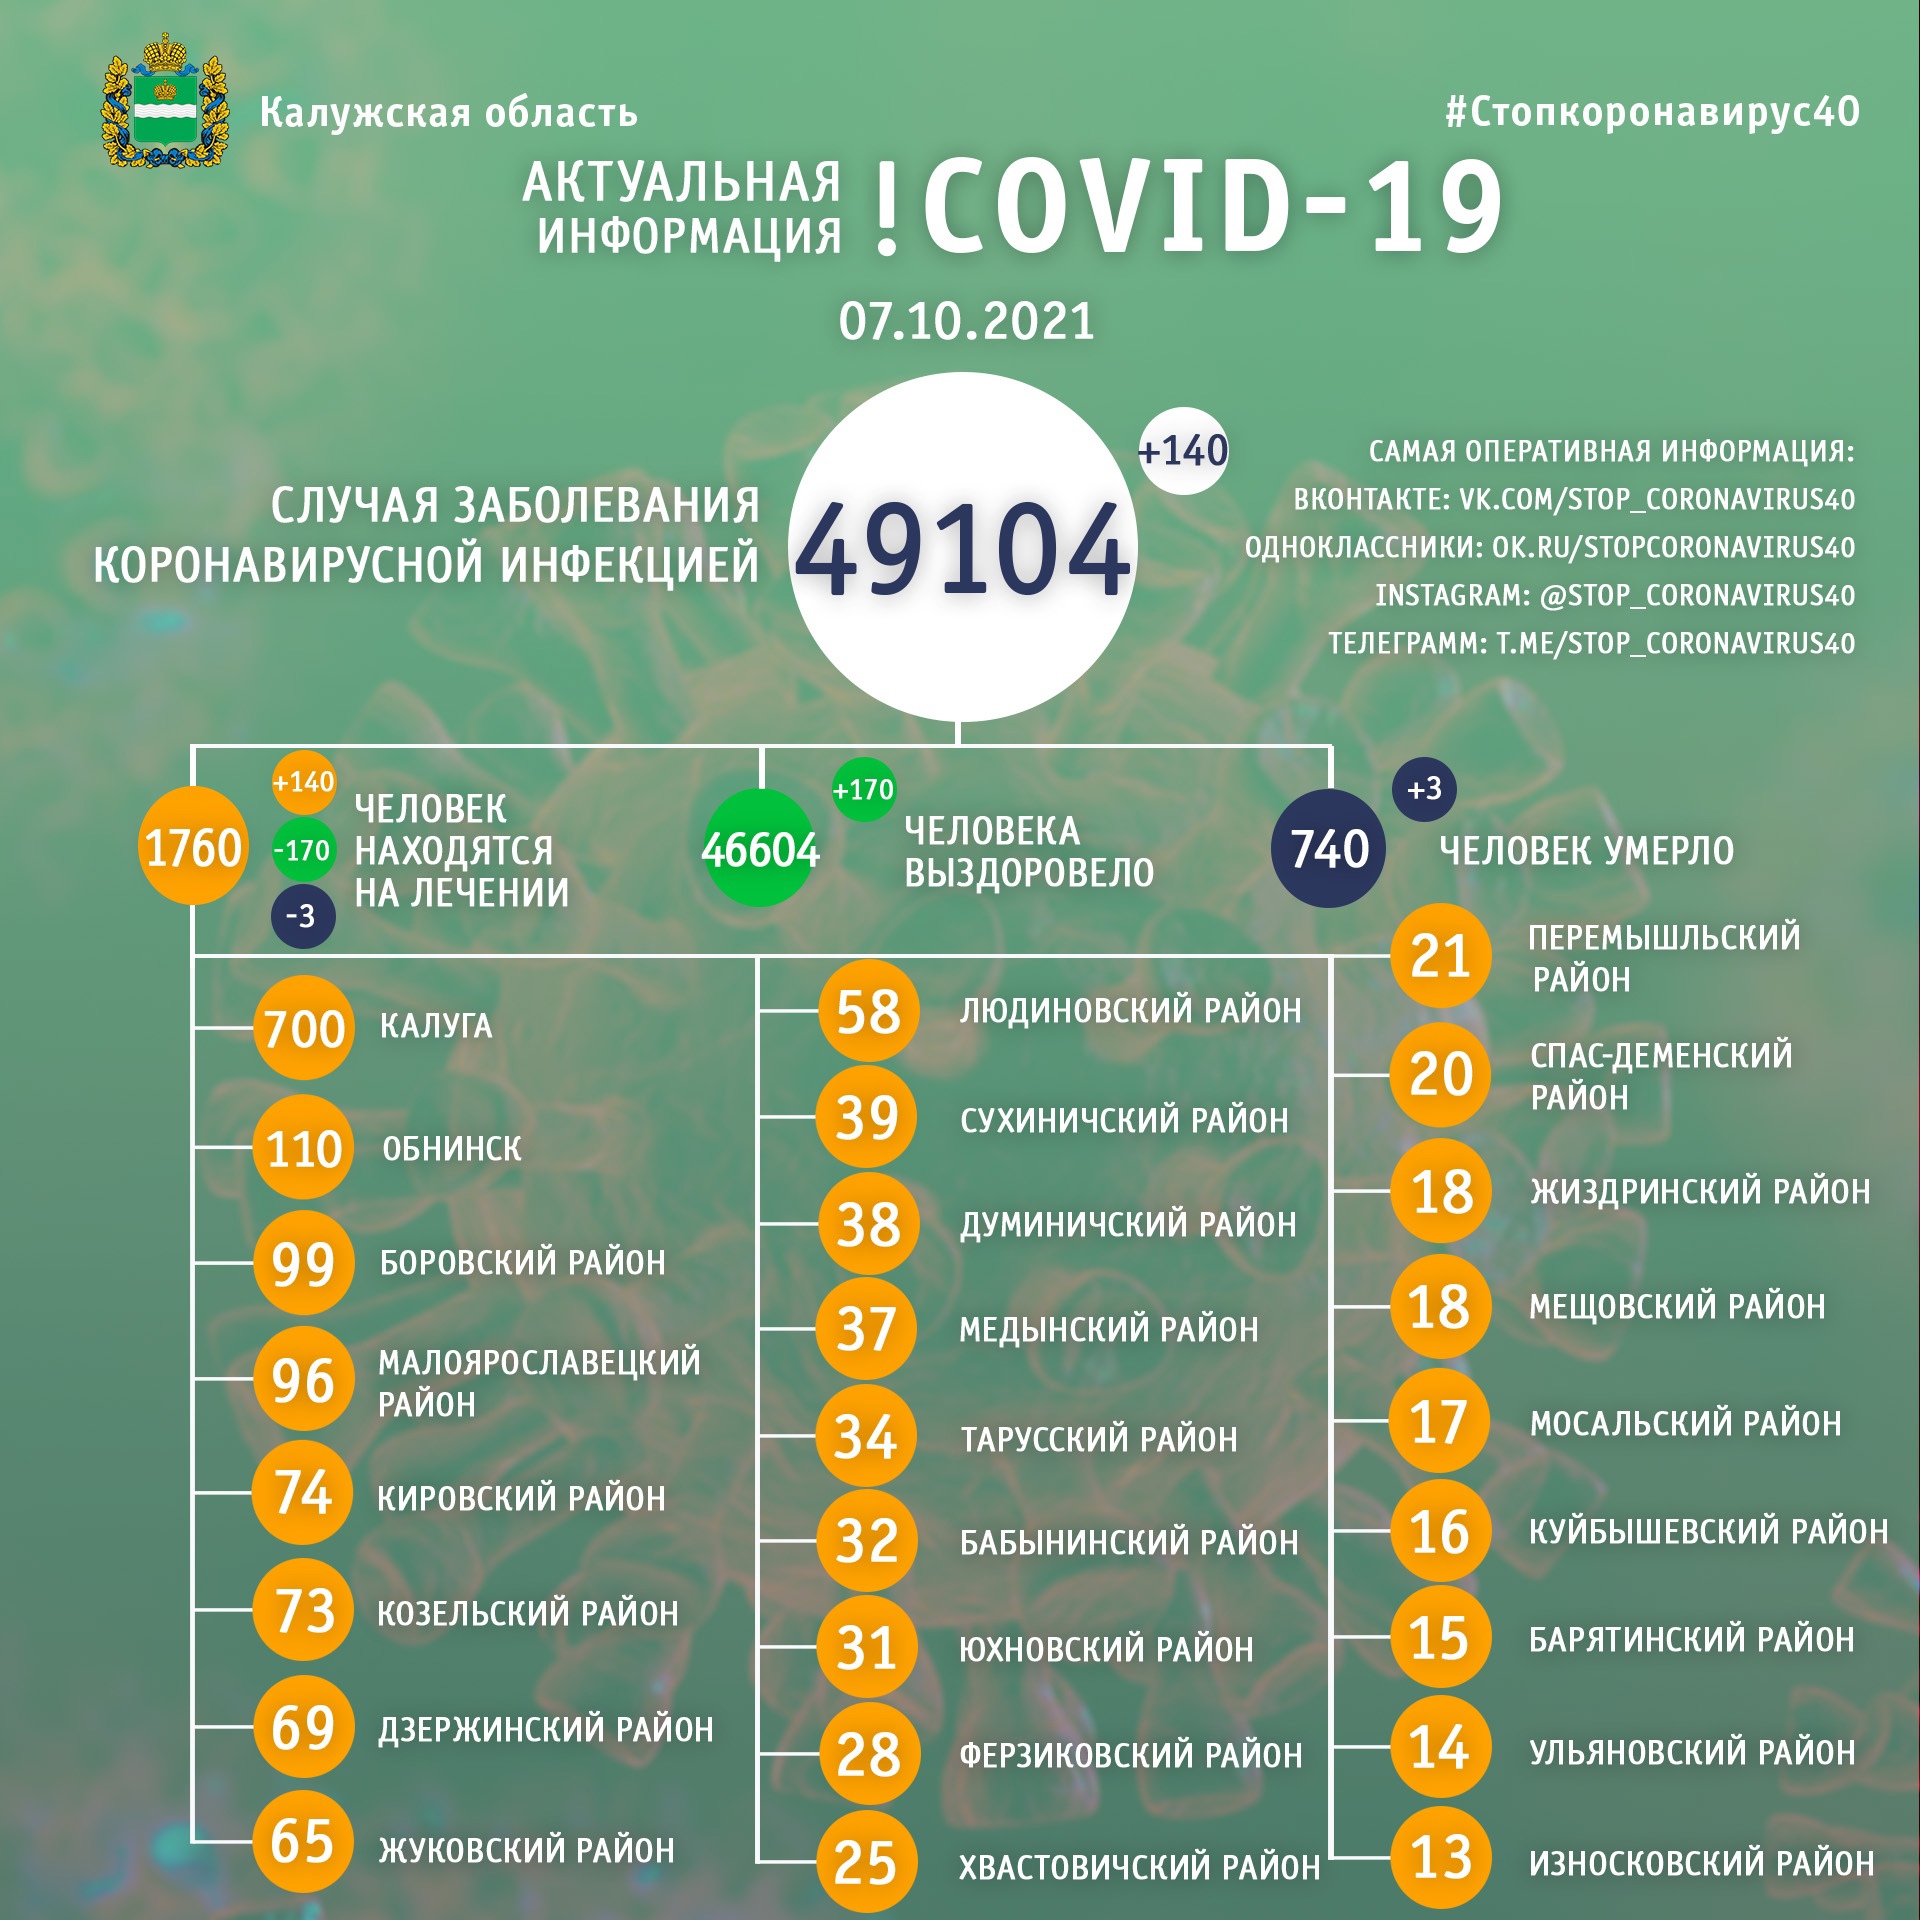 Официальная статистика по коронавирусу в Калужской области на 7 октября 2021 года.